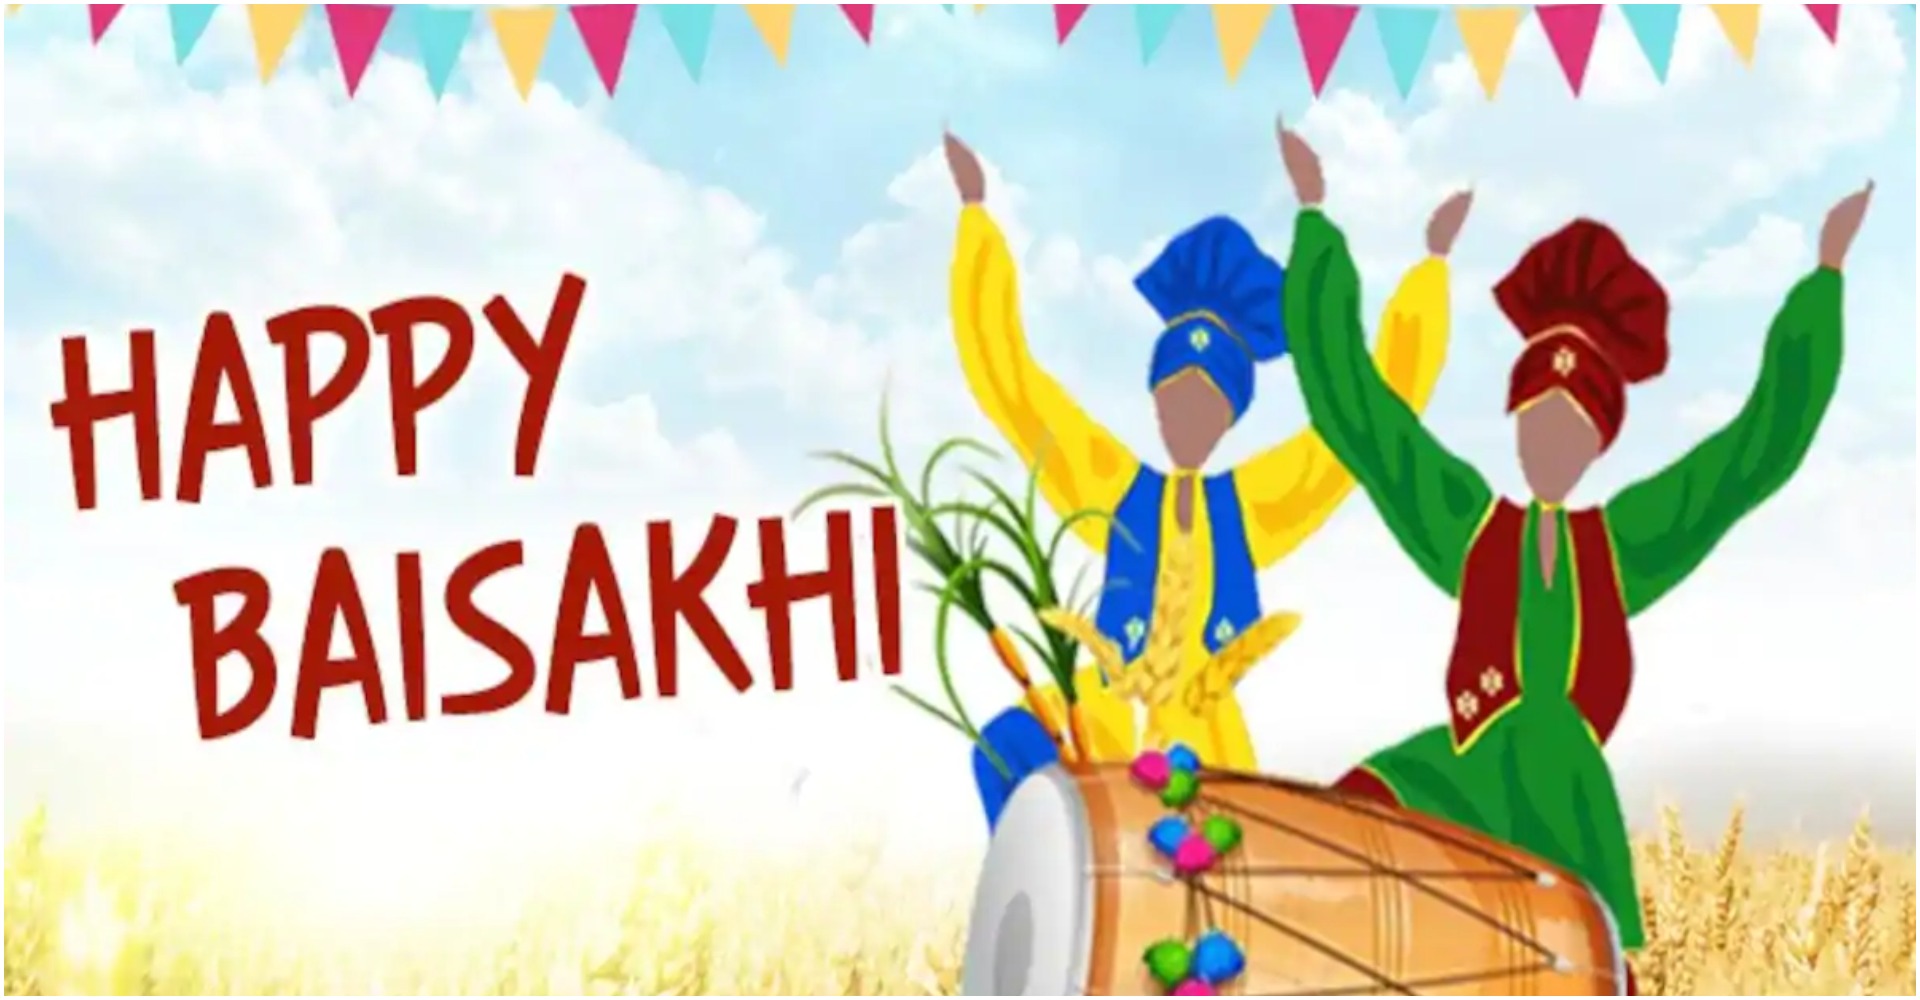 Happy Baisakhi 2020 Wishes: इन खूबसूरत मैसेज और इमेज के जरिए अपने दोस्तों को दीजिए बैसाखी की शुभकामनाएं